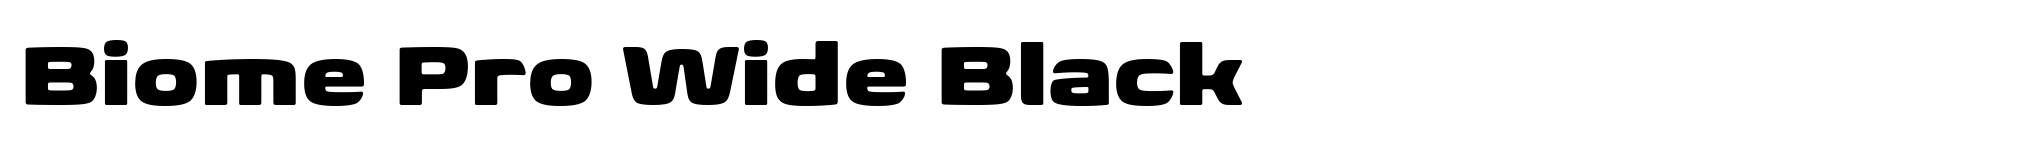 Biome Pro Wide Black image